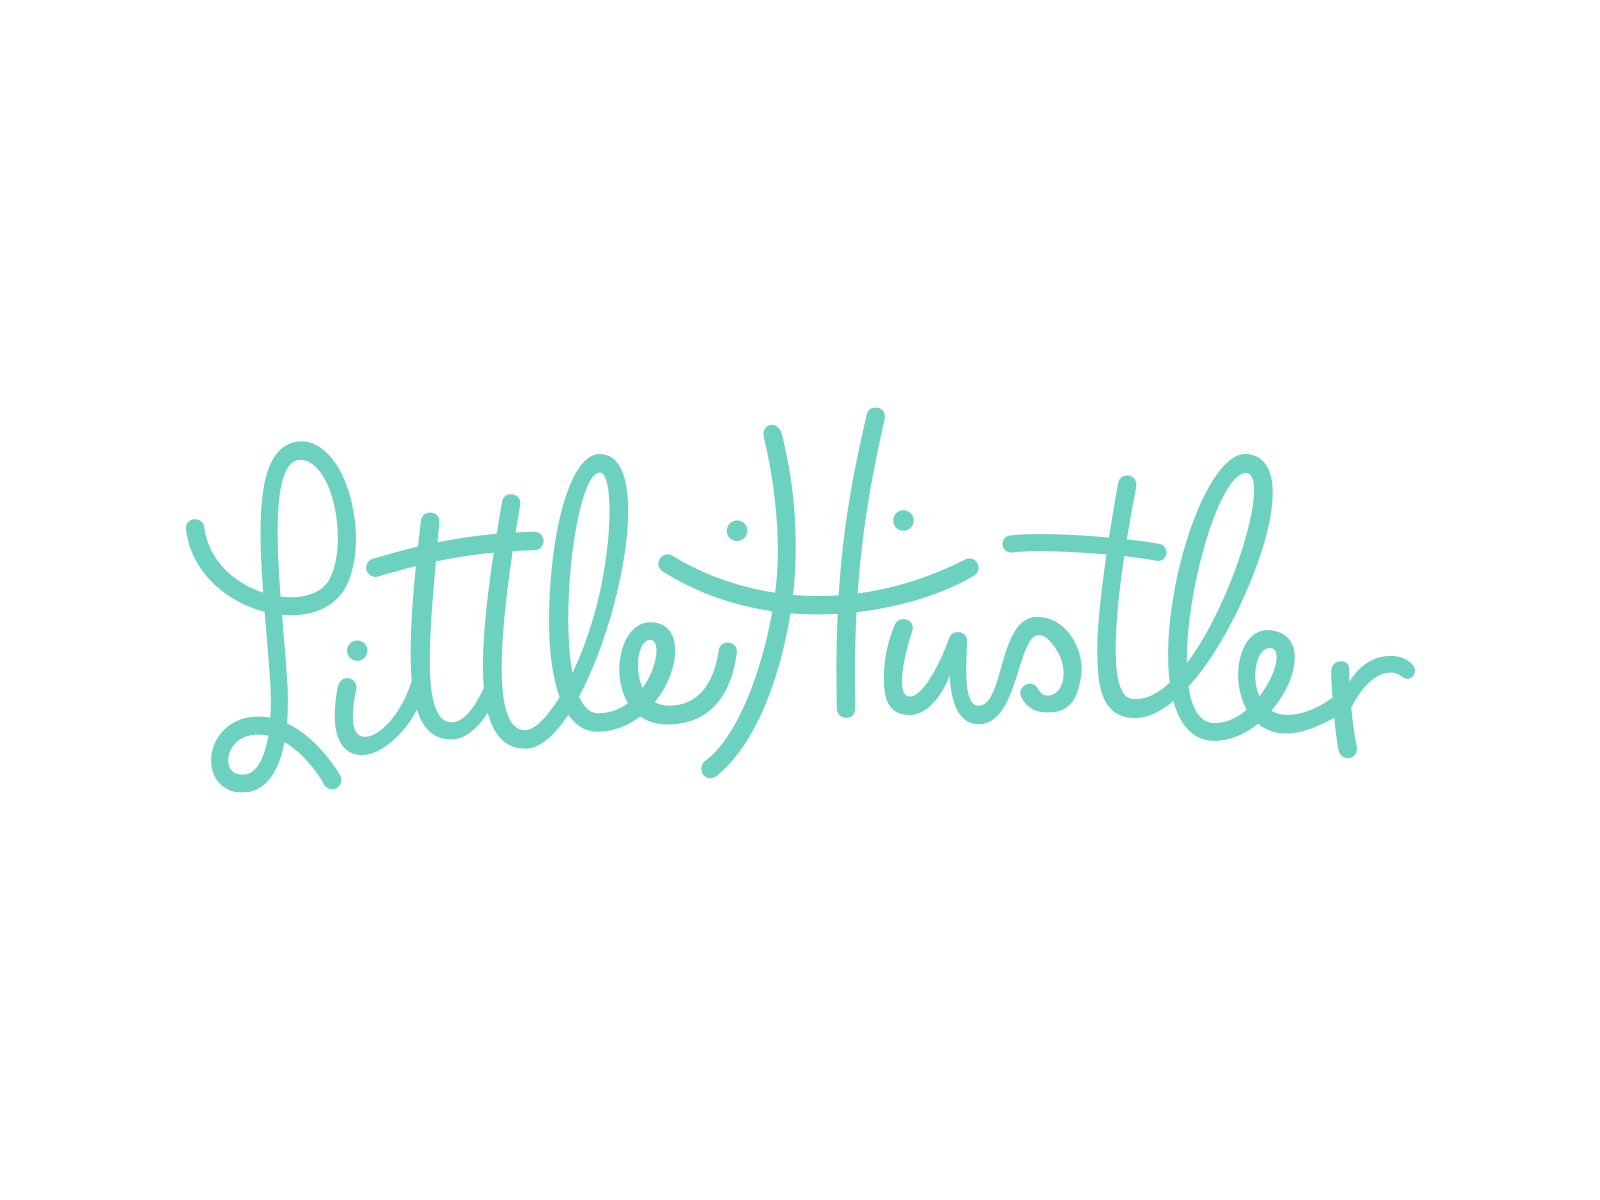 Little Hustler by Jozef Arpa on Dribbble